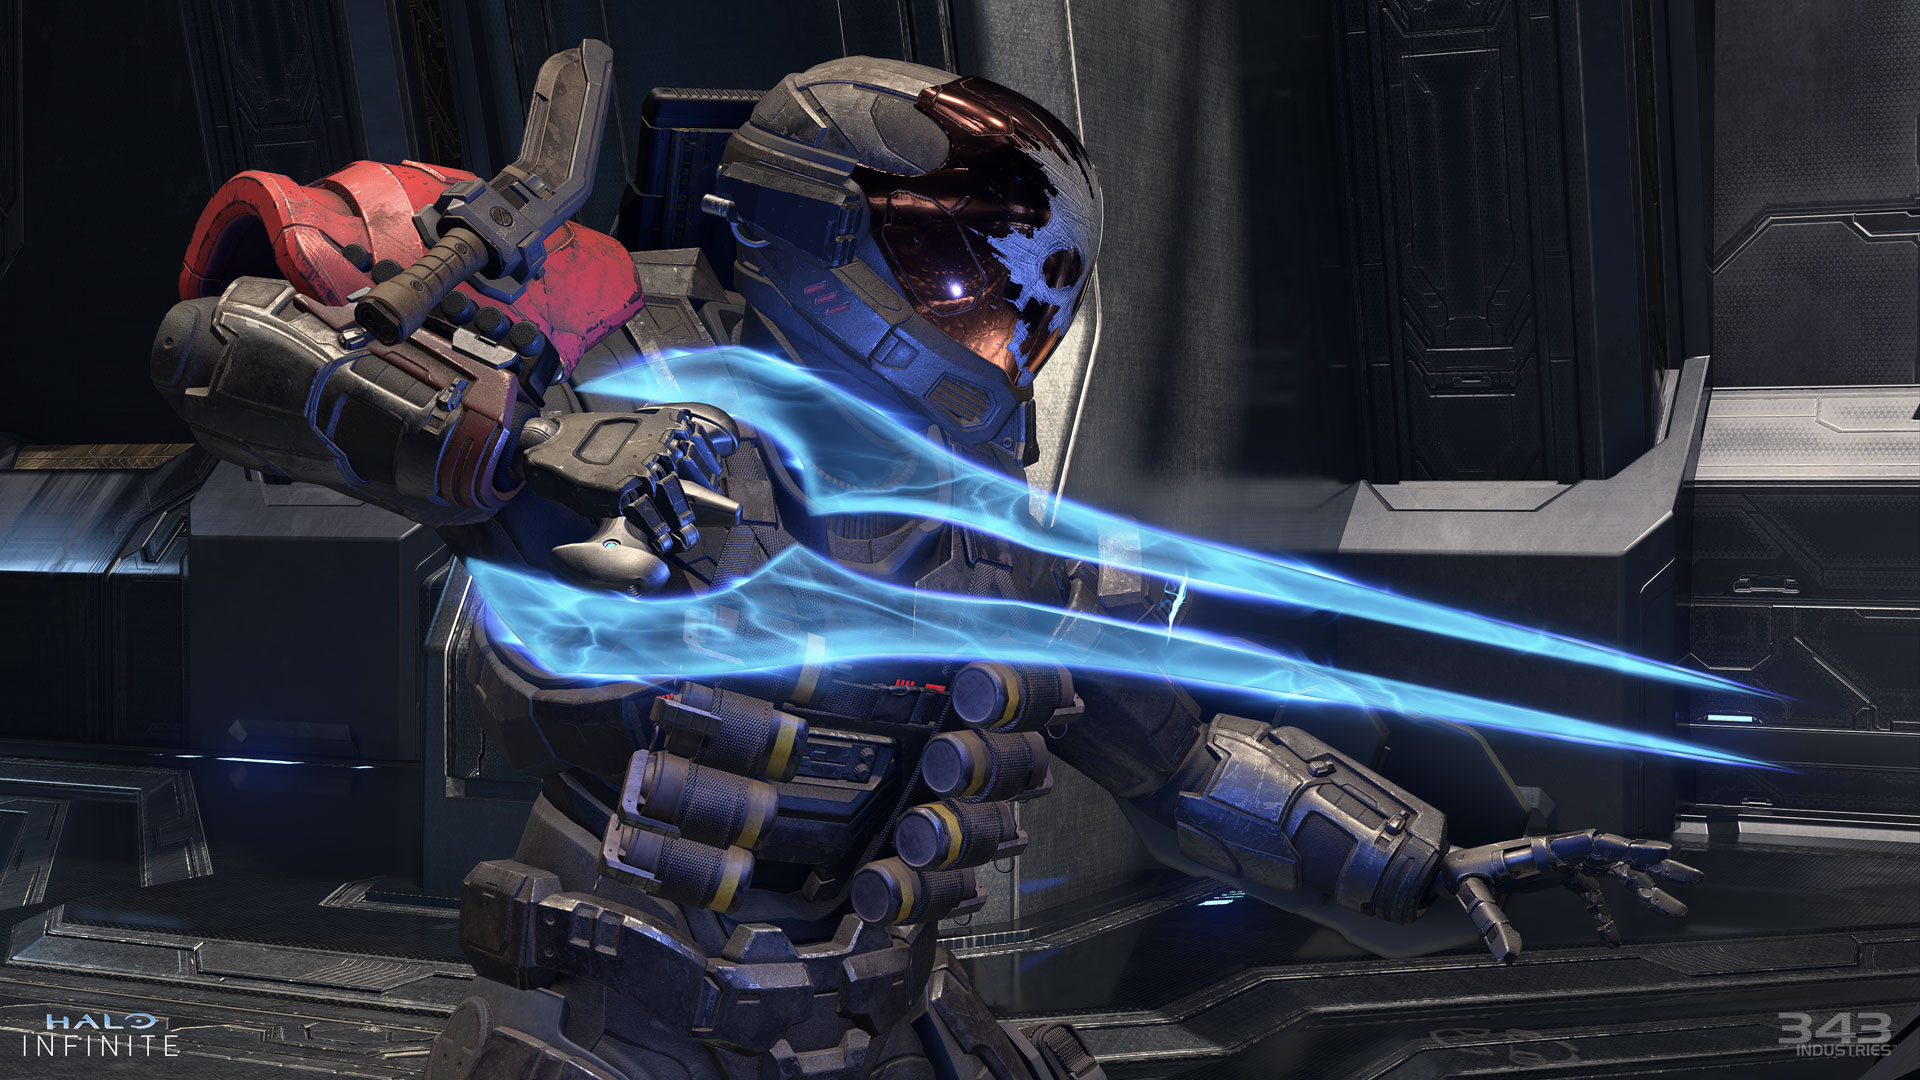 Snímka obrazovky z hry Halo Infinite zobrazujúca boj so Spartanom